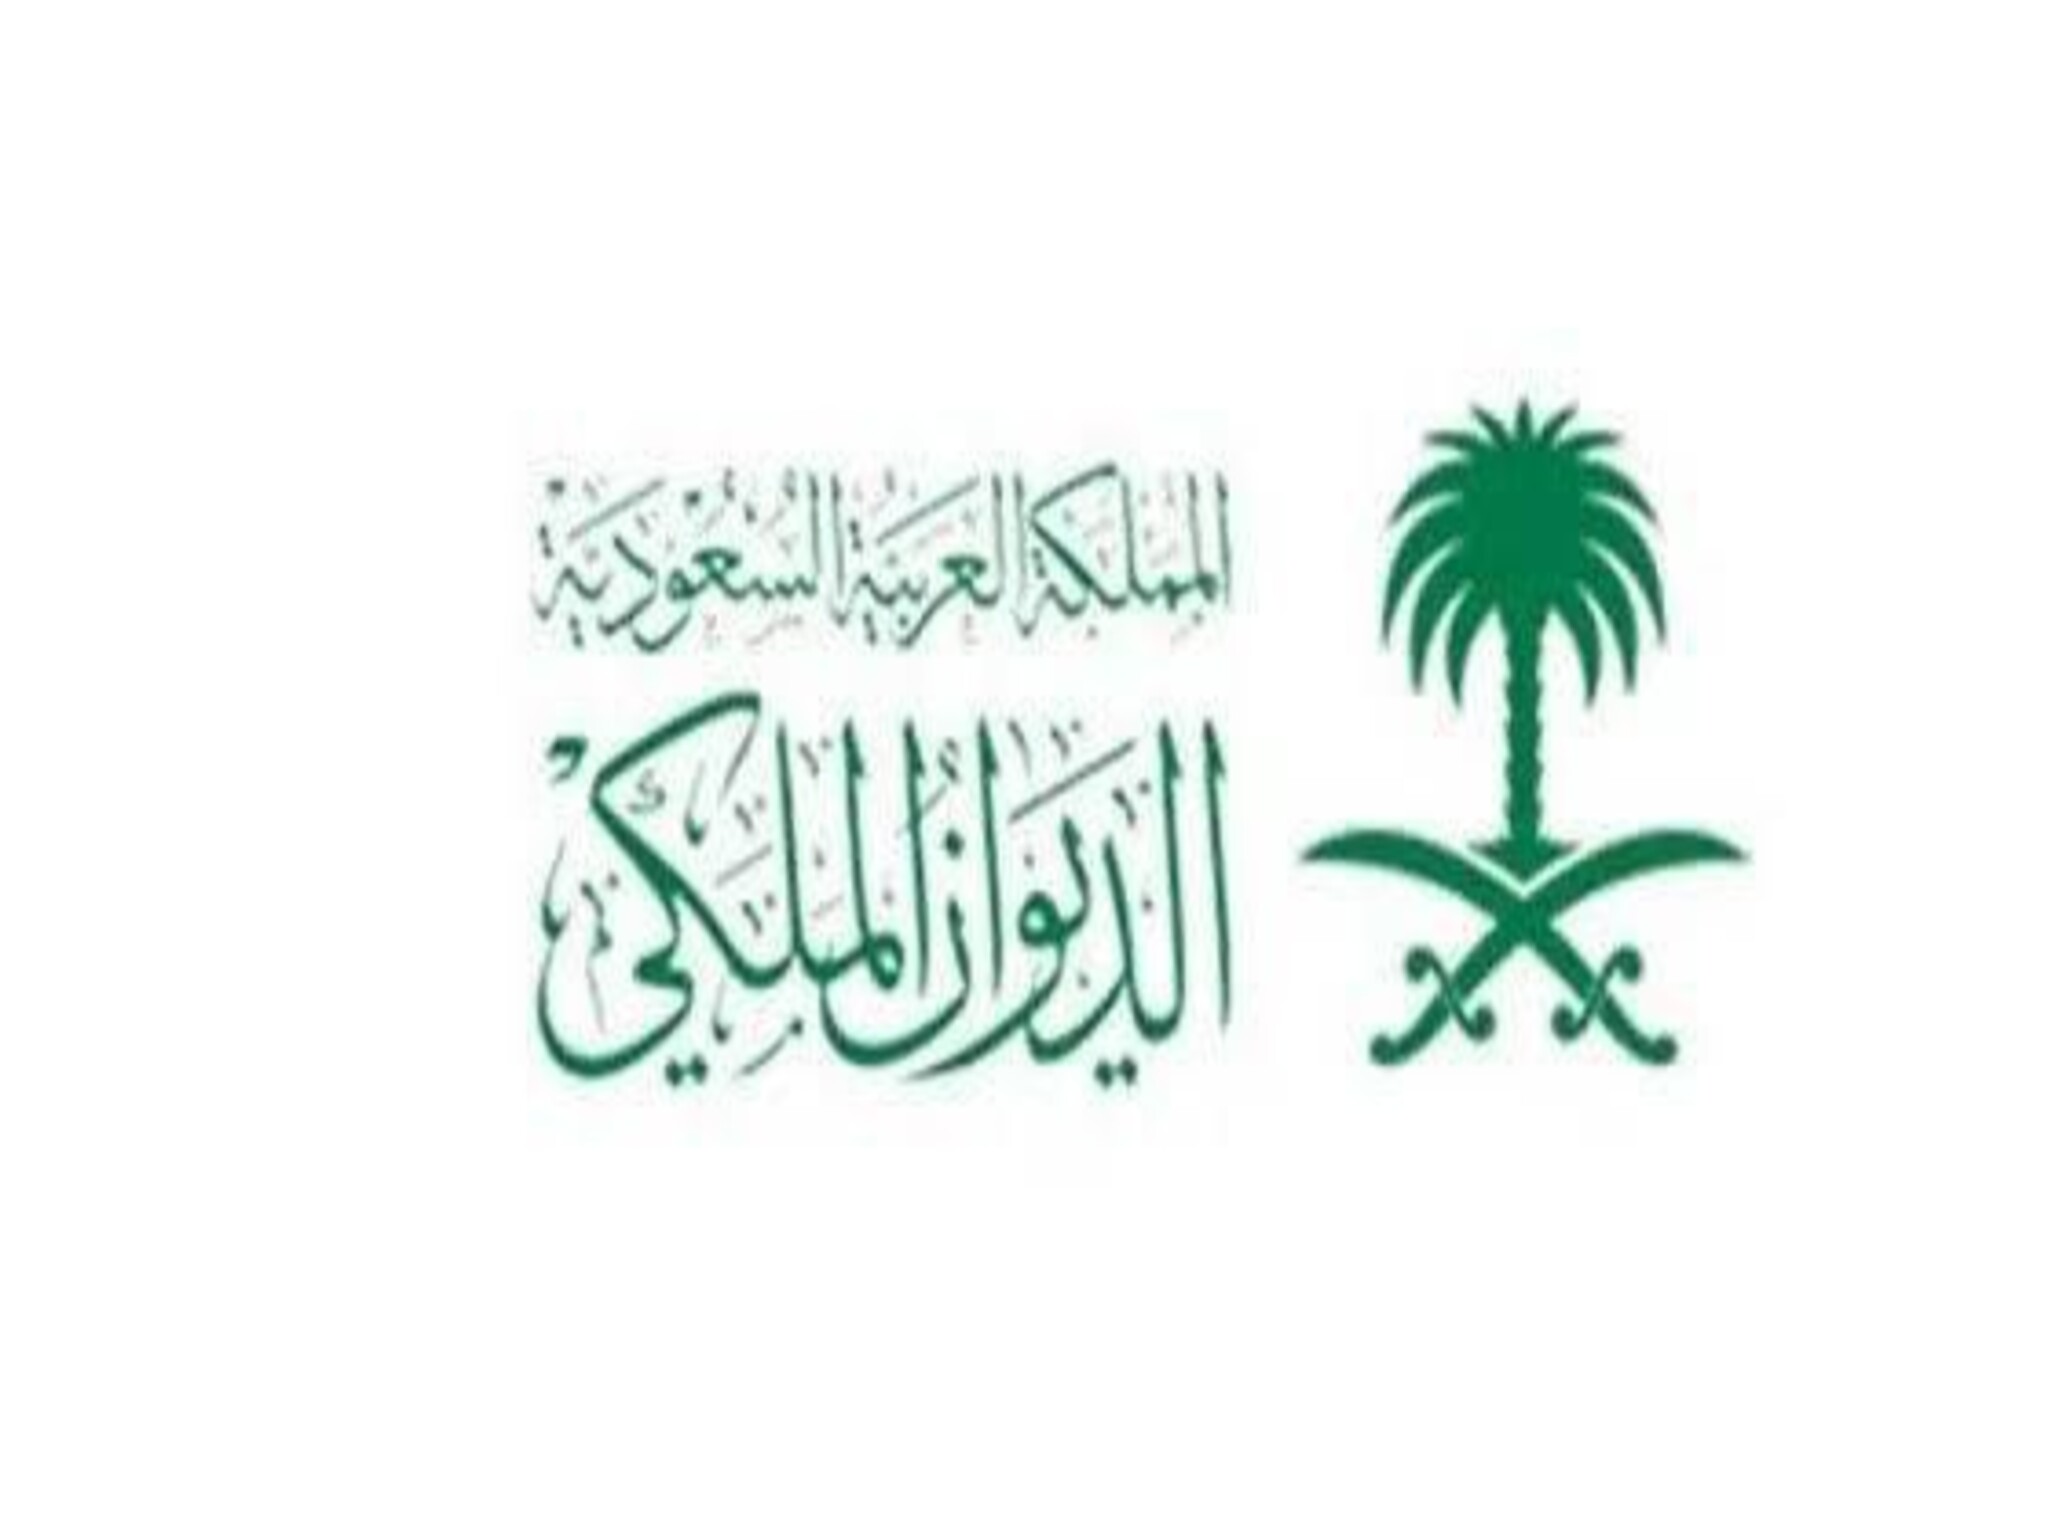 الديوان الملكي يعلن عن وفاة الأميرة موضي بنت محمد بن سعود الكبير 